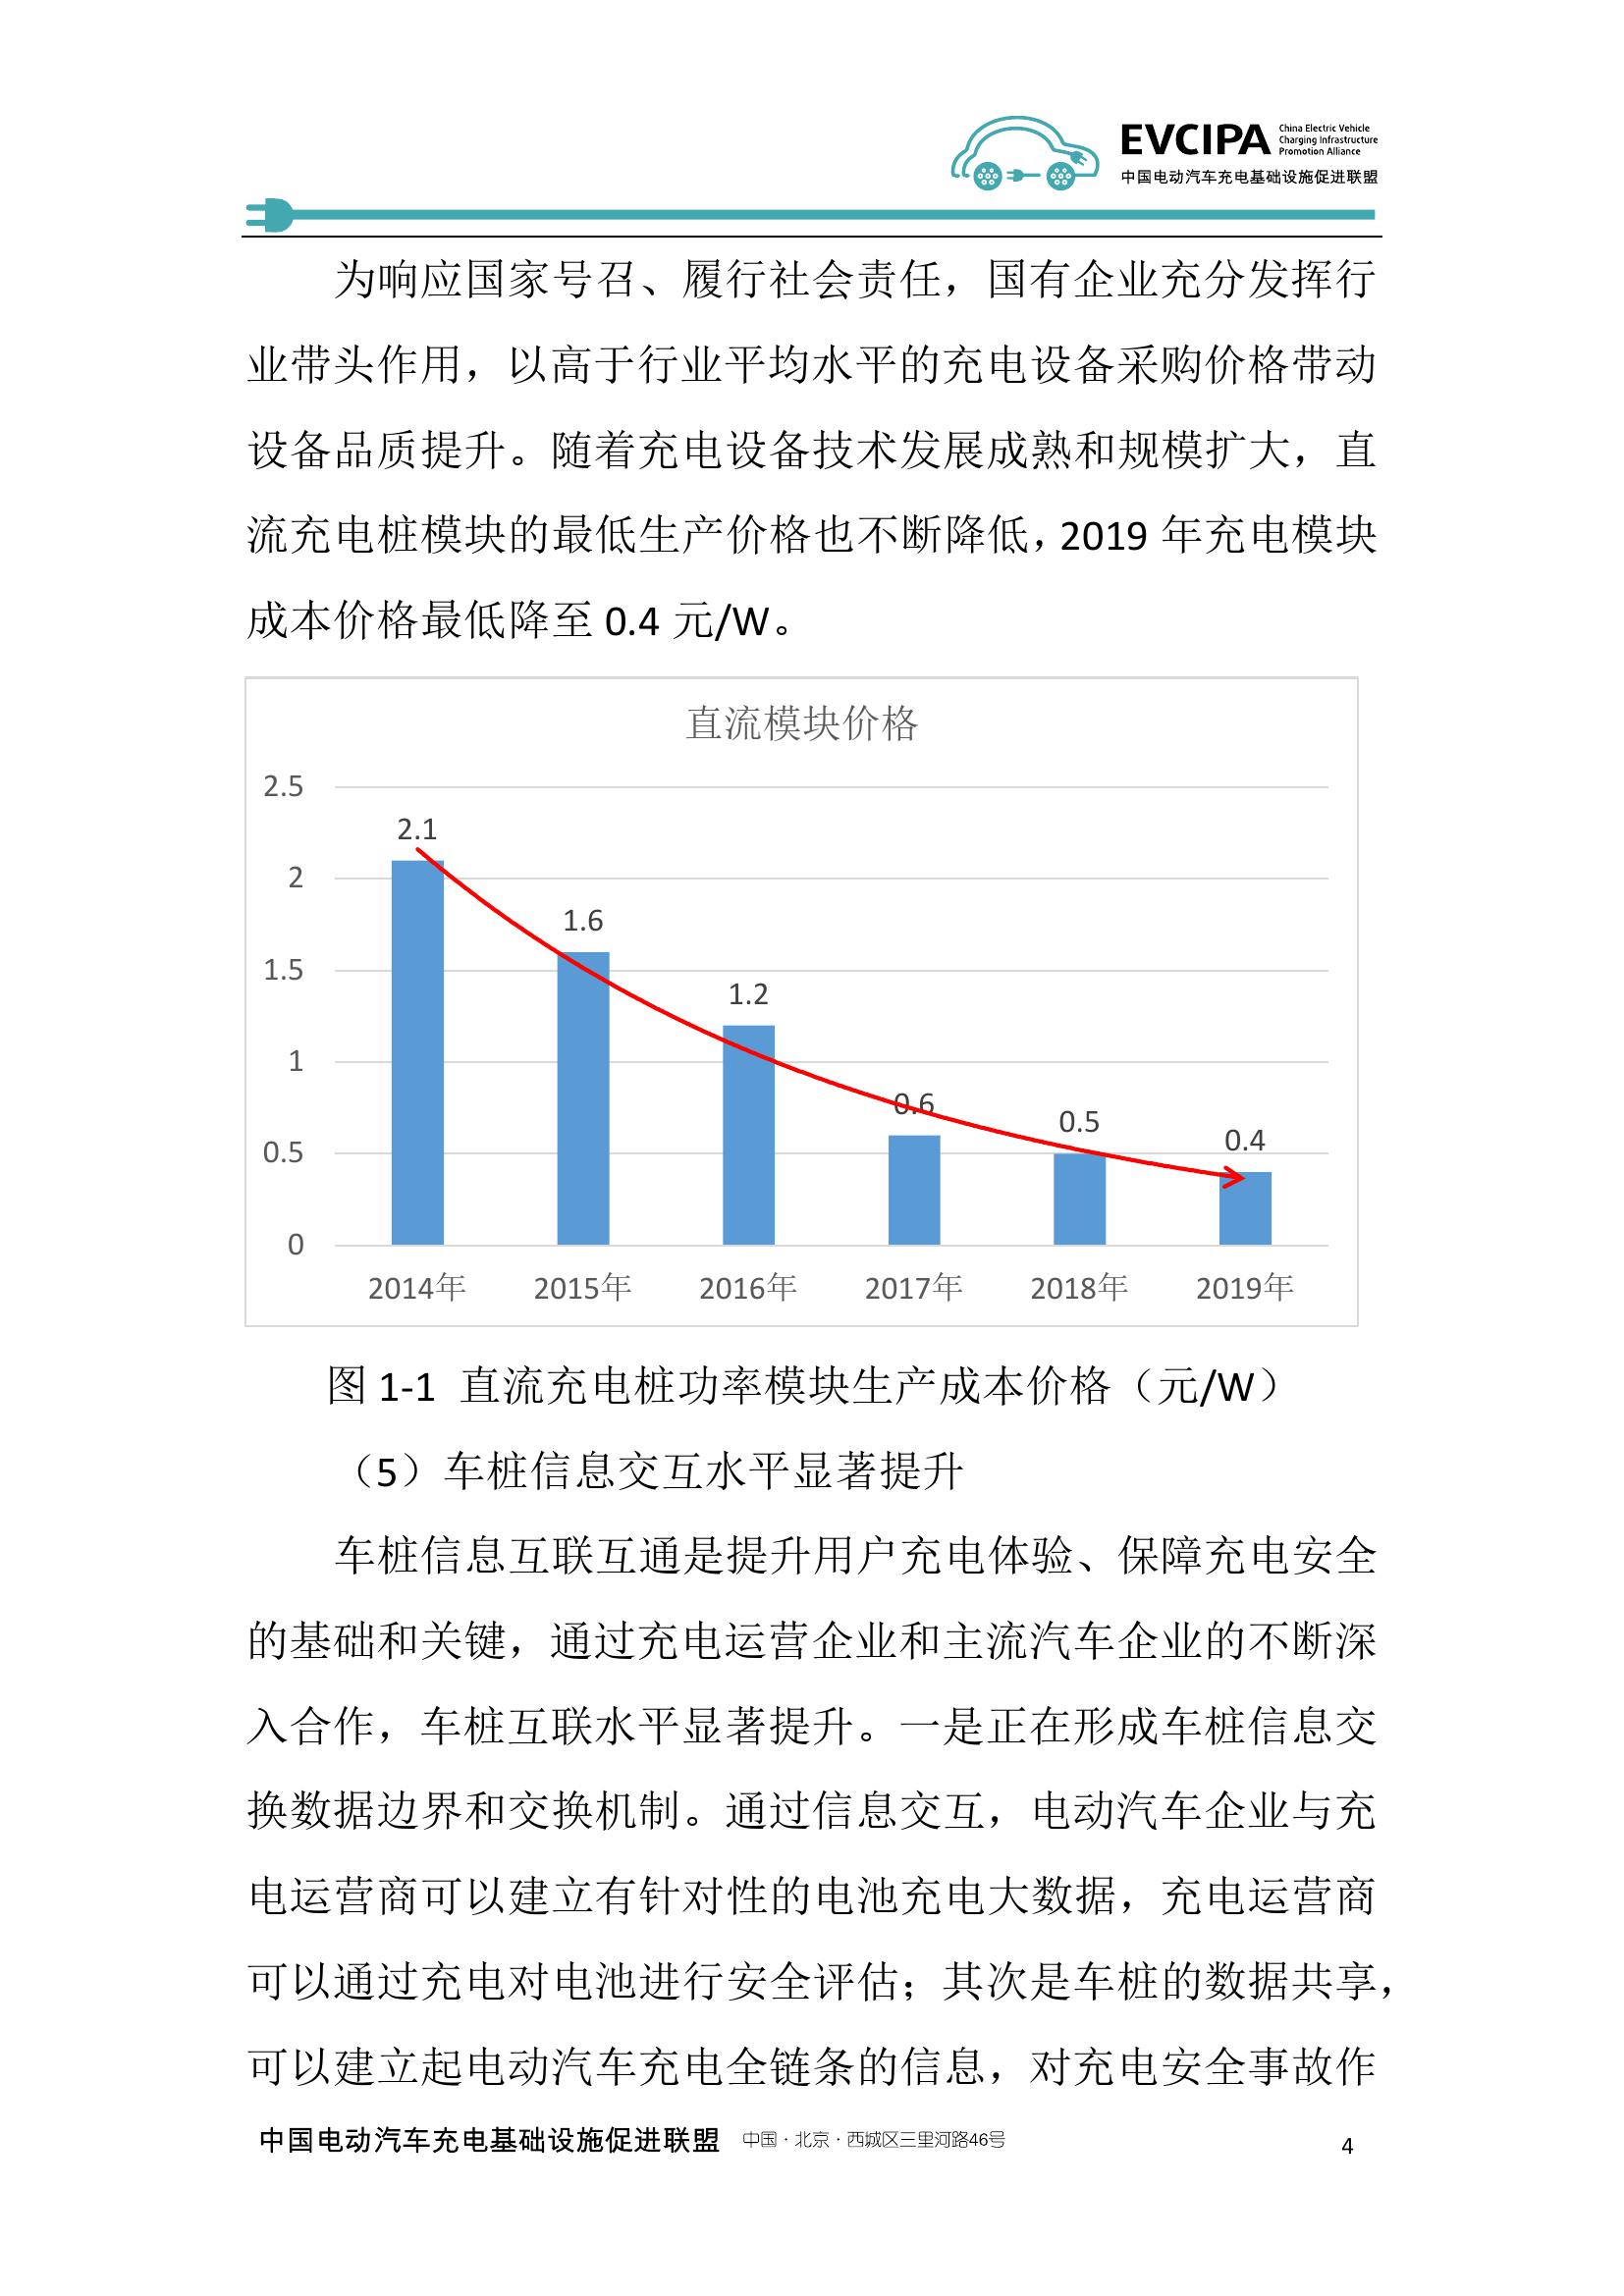 2019-2020年度中国充电基础设施发展报告_000012.jpg